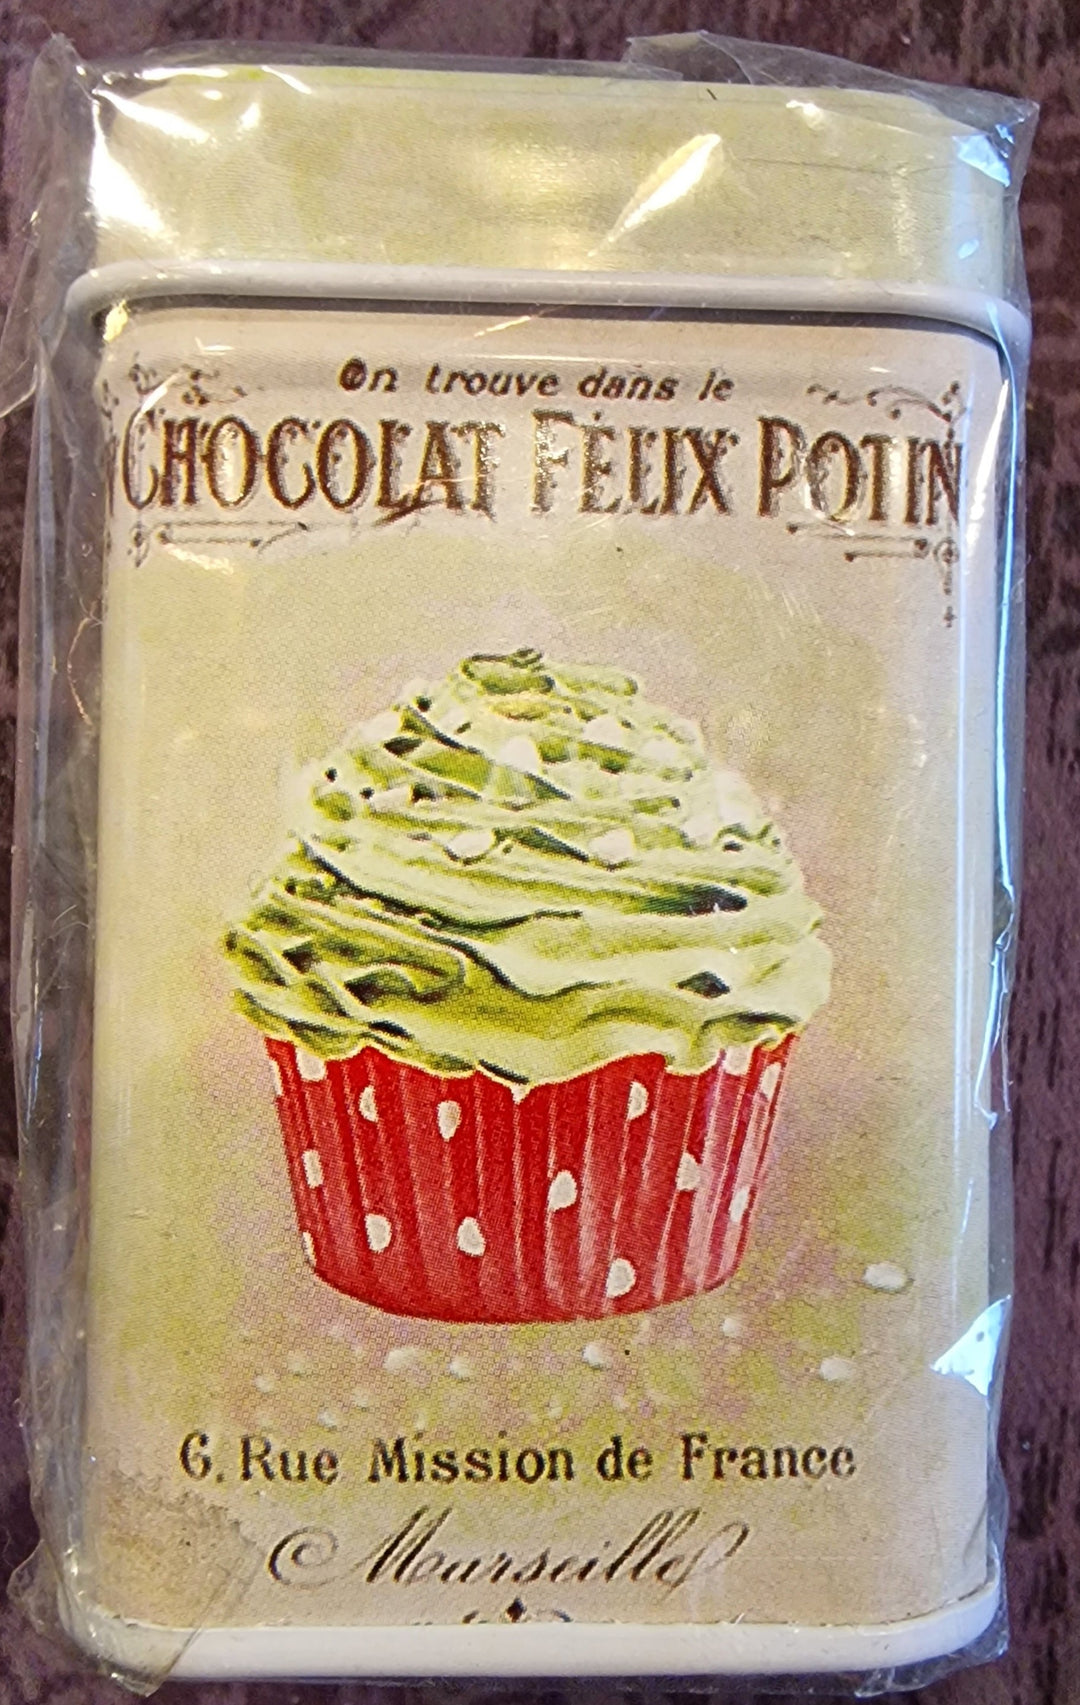 Mini Blechdose Chocolat Feux Potin